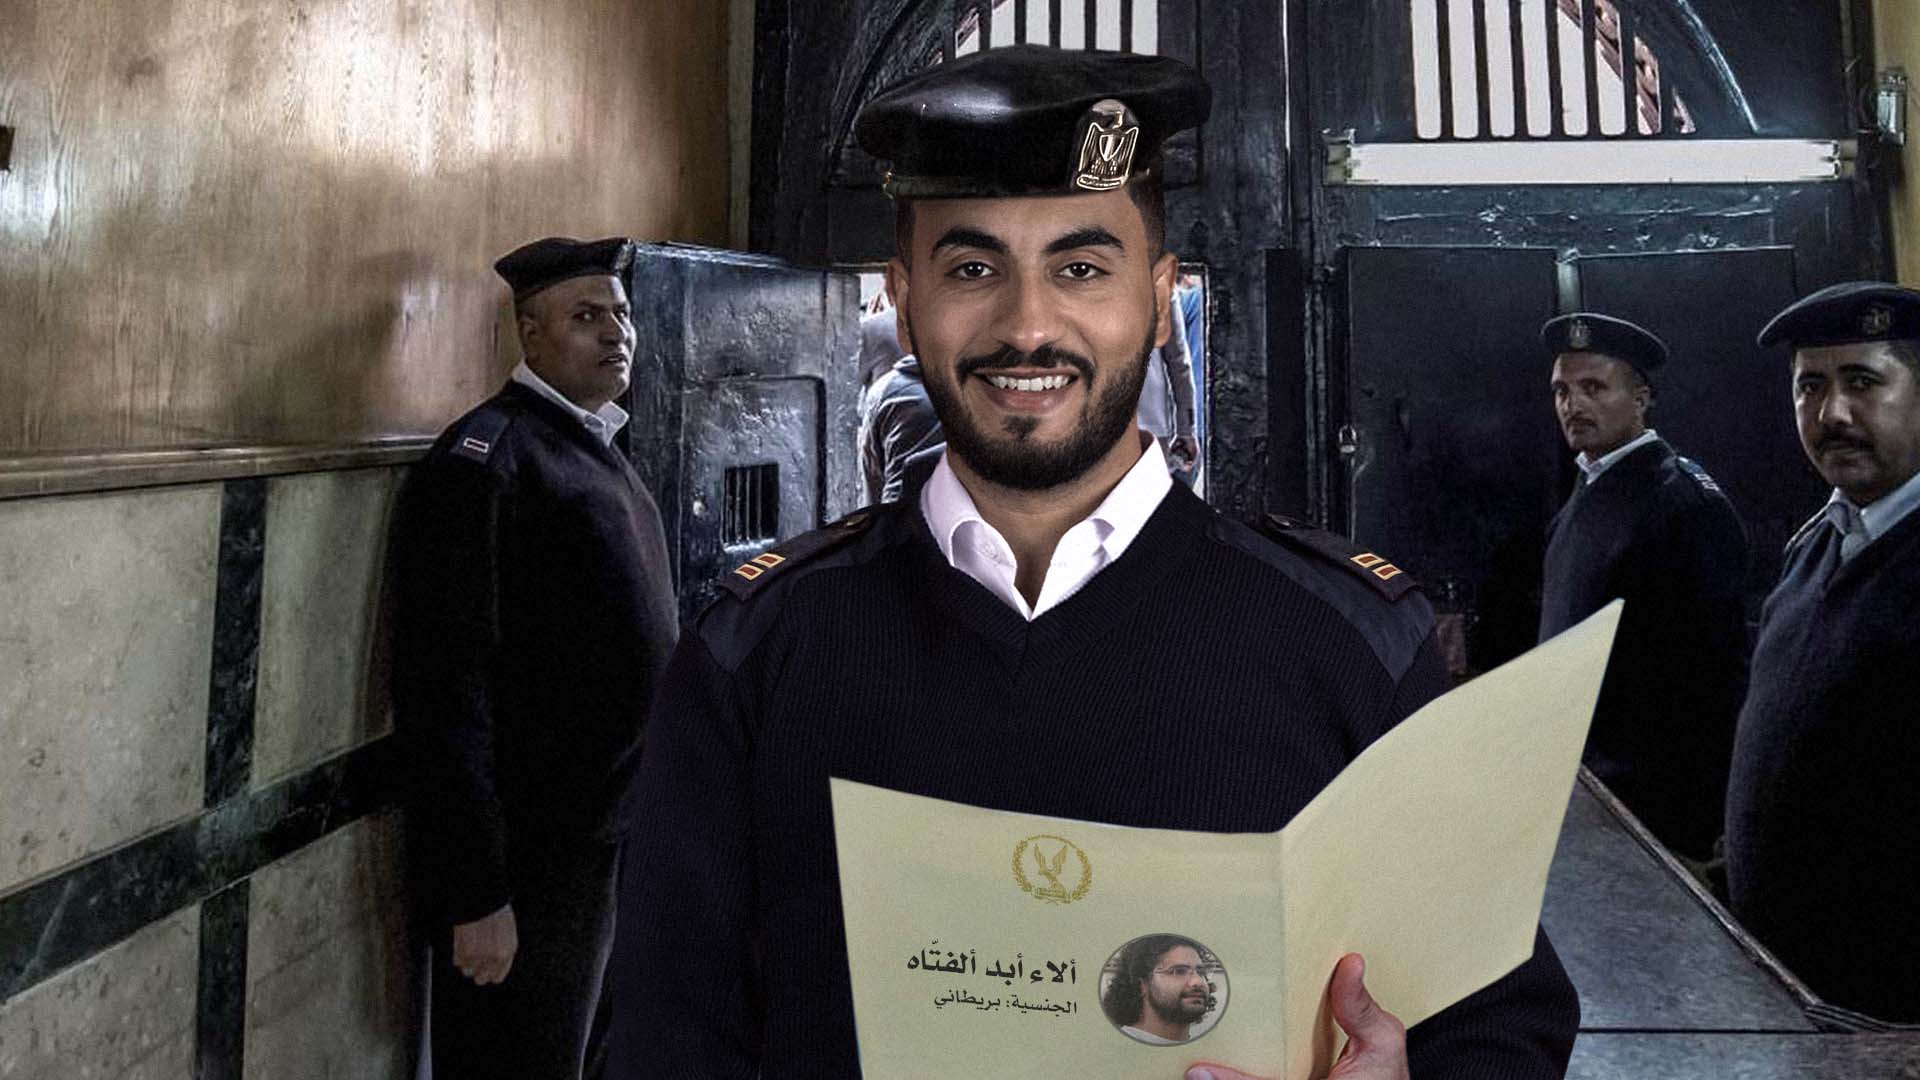 صورة السلطات المصرية تبدأ النظر في قضية معتقل جديد اسمه ألاء أبد ألفتّاه